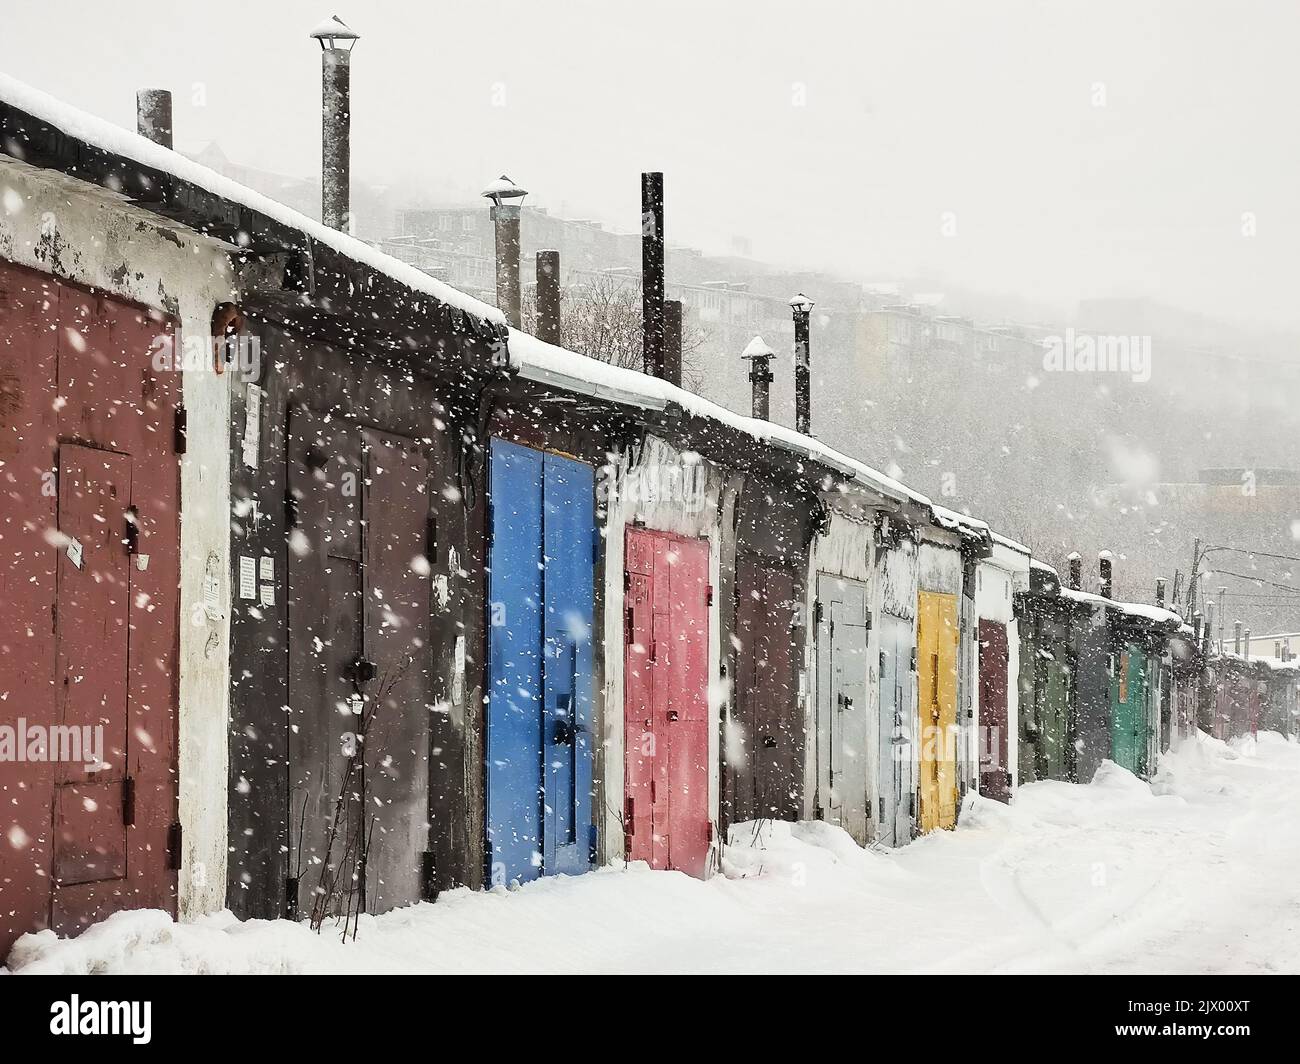 Portes de garage en métal coloré dans la neige Banque D'Images